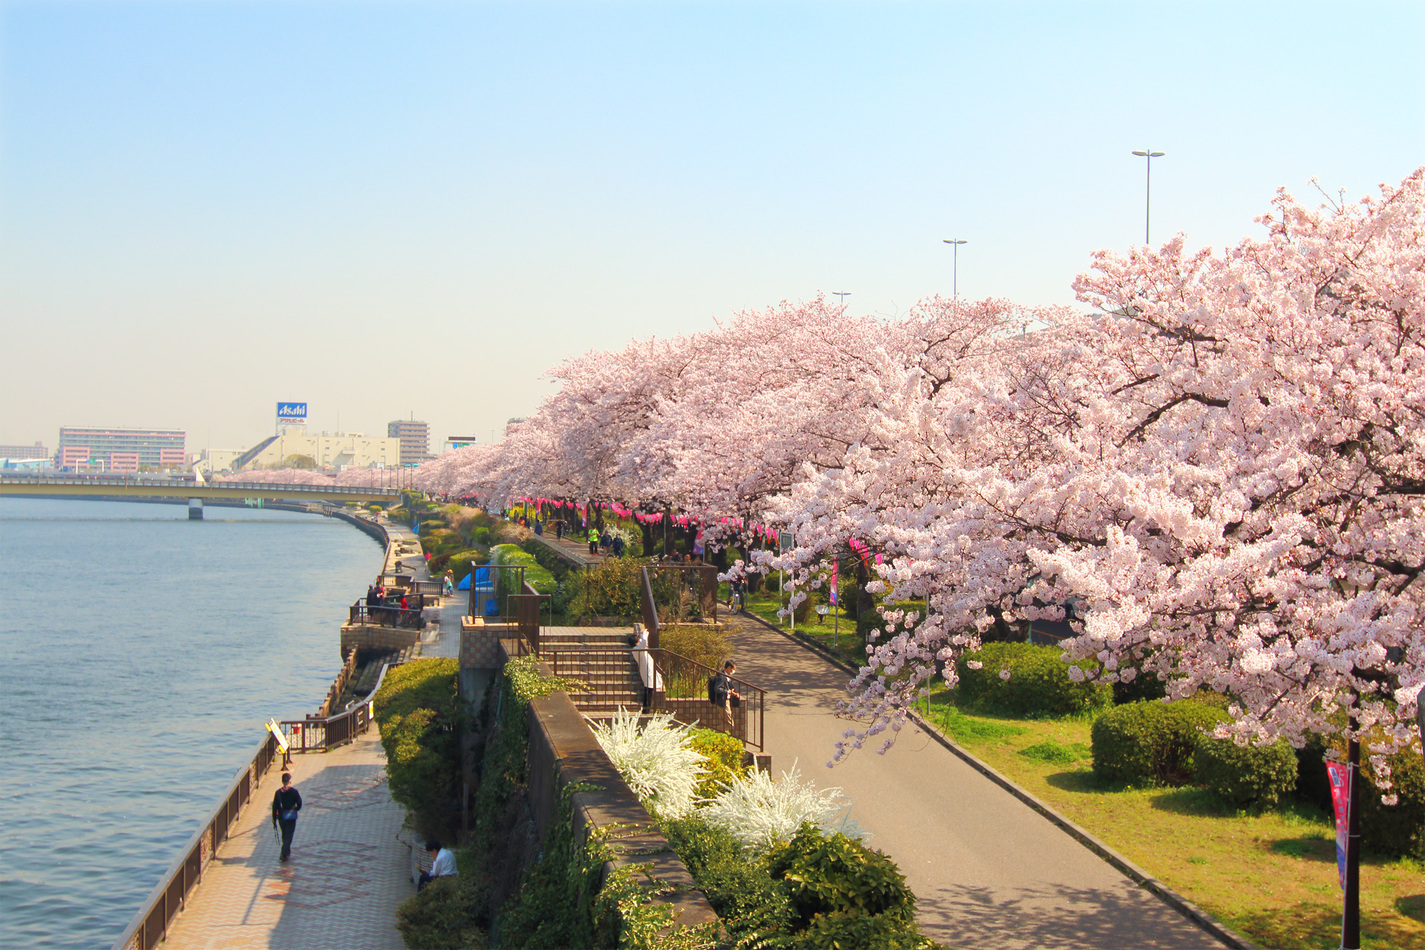 Công viên Sumida - 1 trong 100 địa điểm ngắm hoa anh đào đẹp nhất Nhật Bản!  - Sugoi | Trang tin tức Nhật Việt